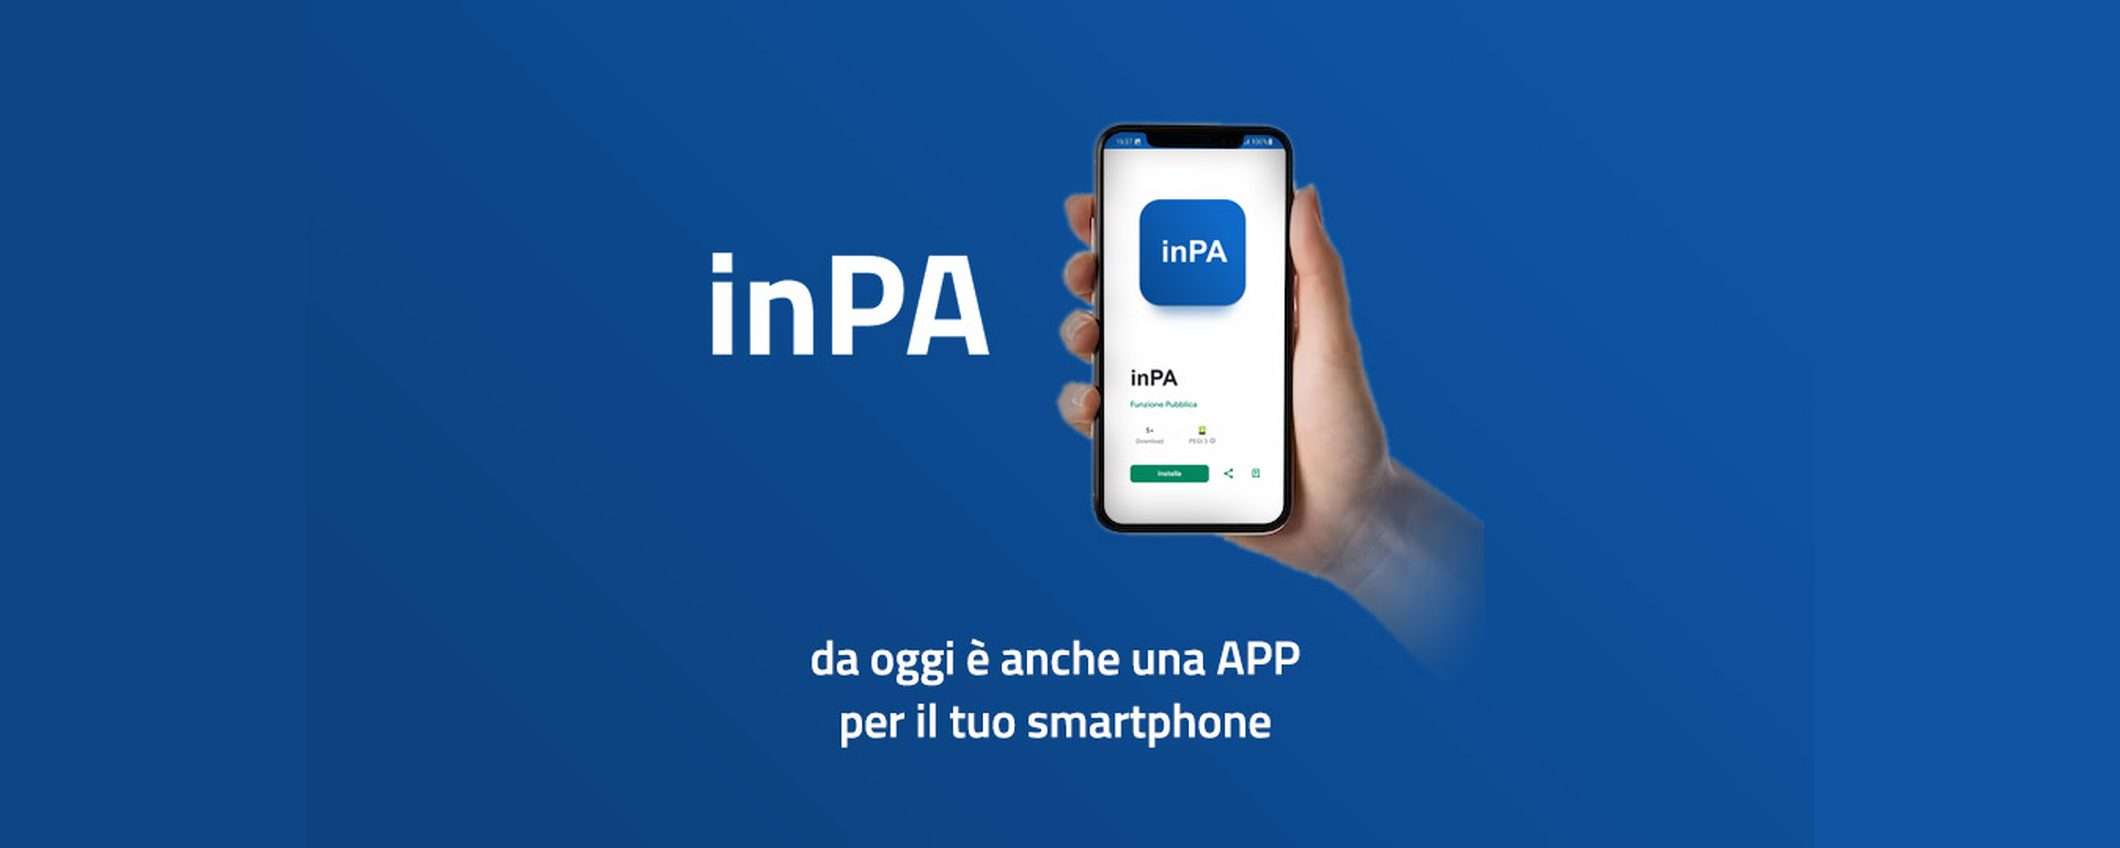 inPA: ecco l'app per partecipare ai concorsi pubblici